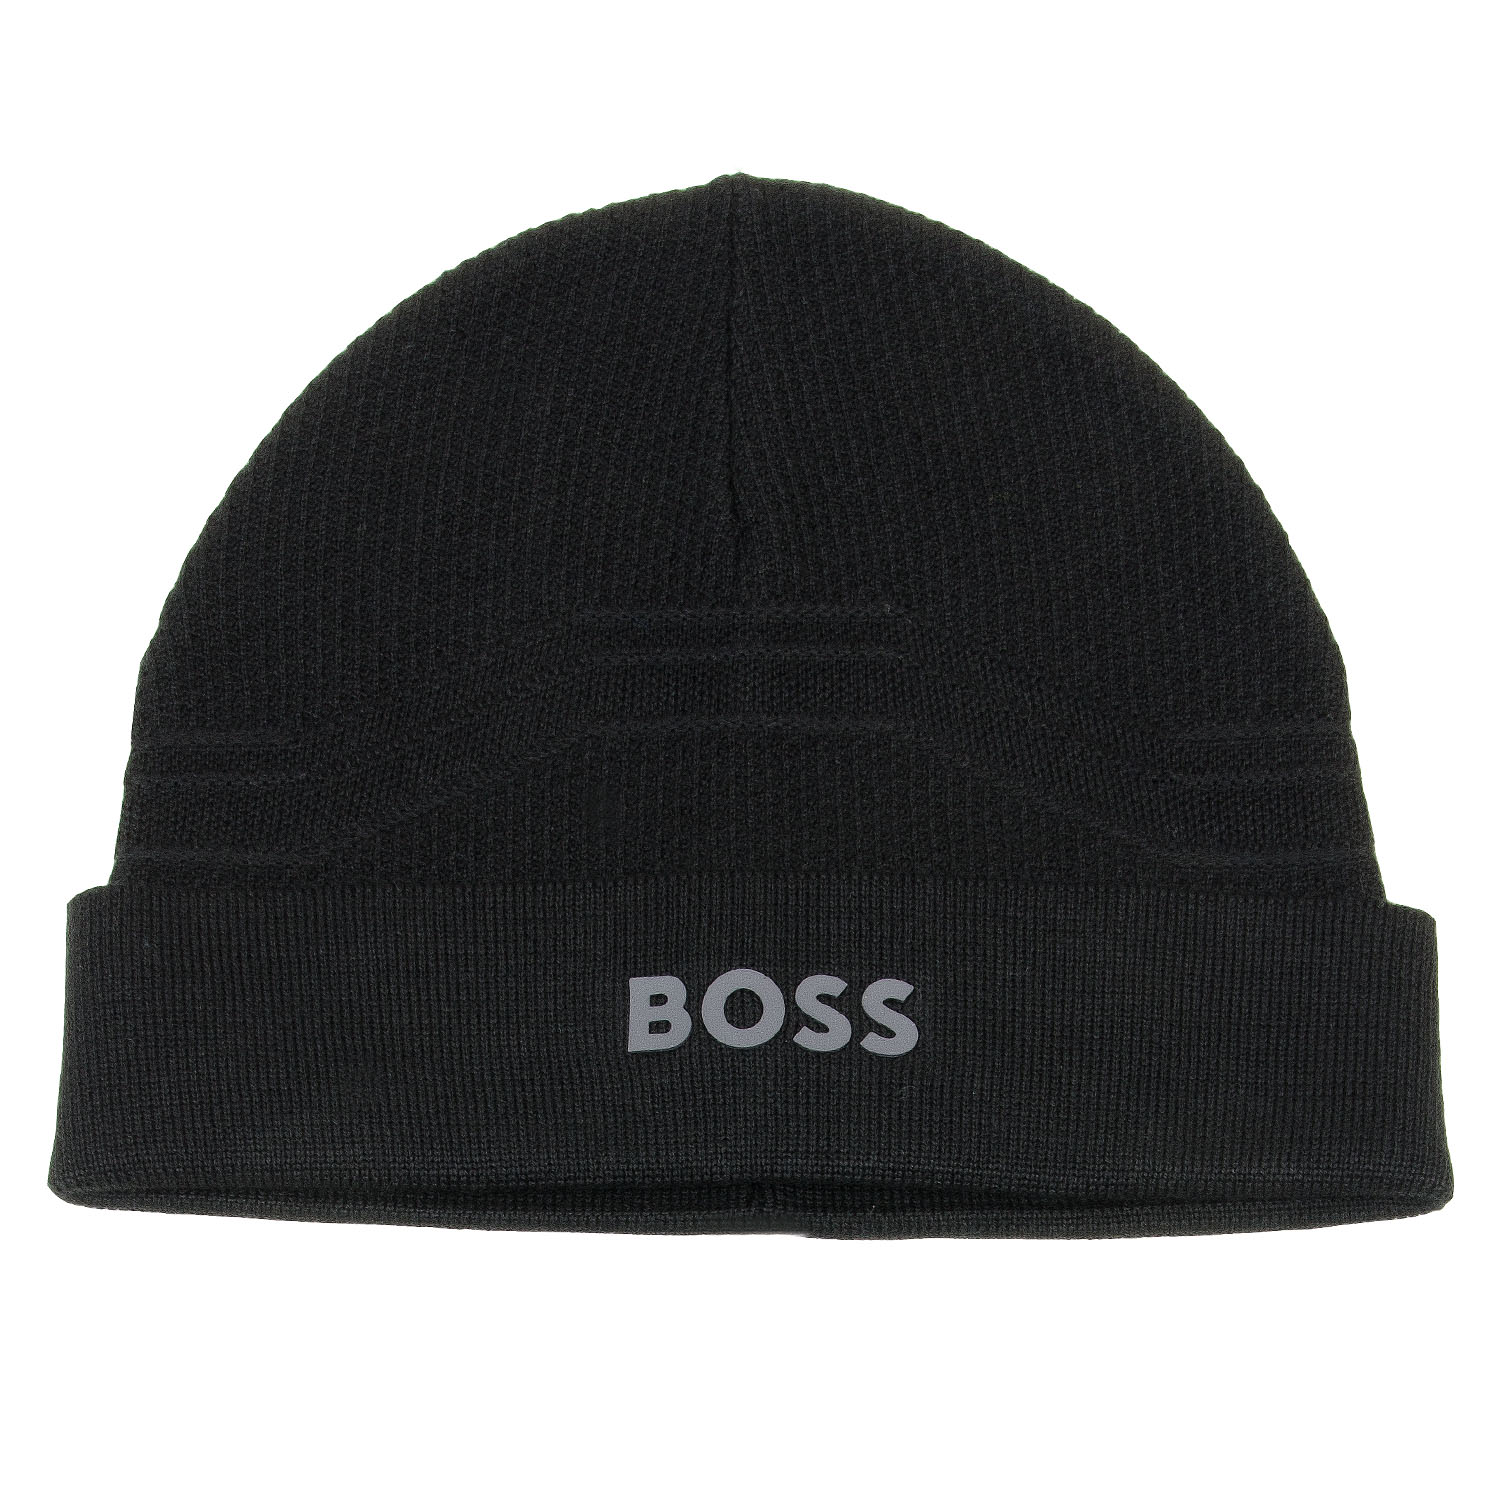 BOSS Axor Beanie Hat